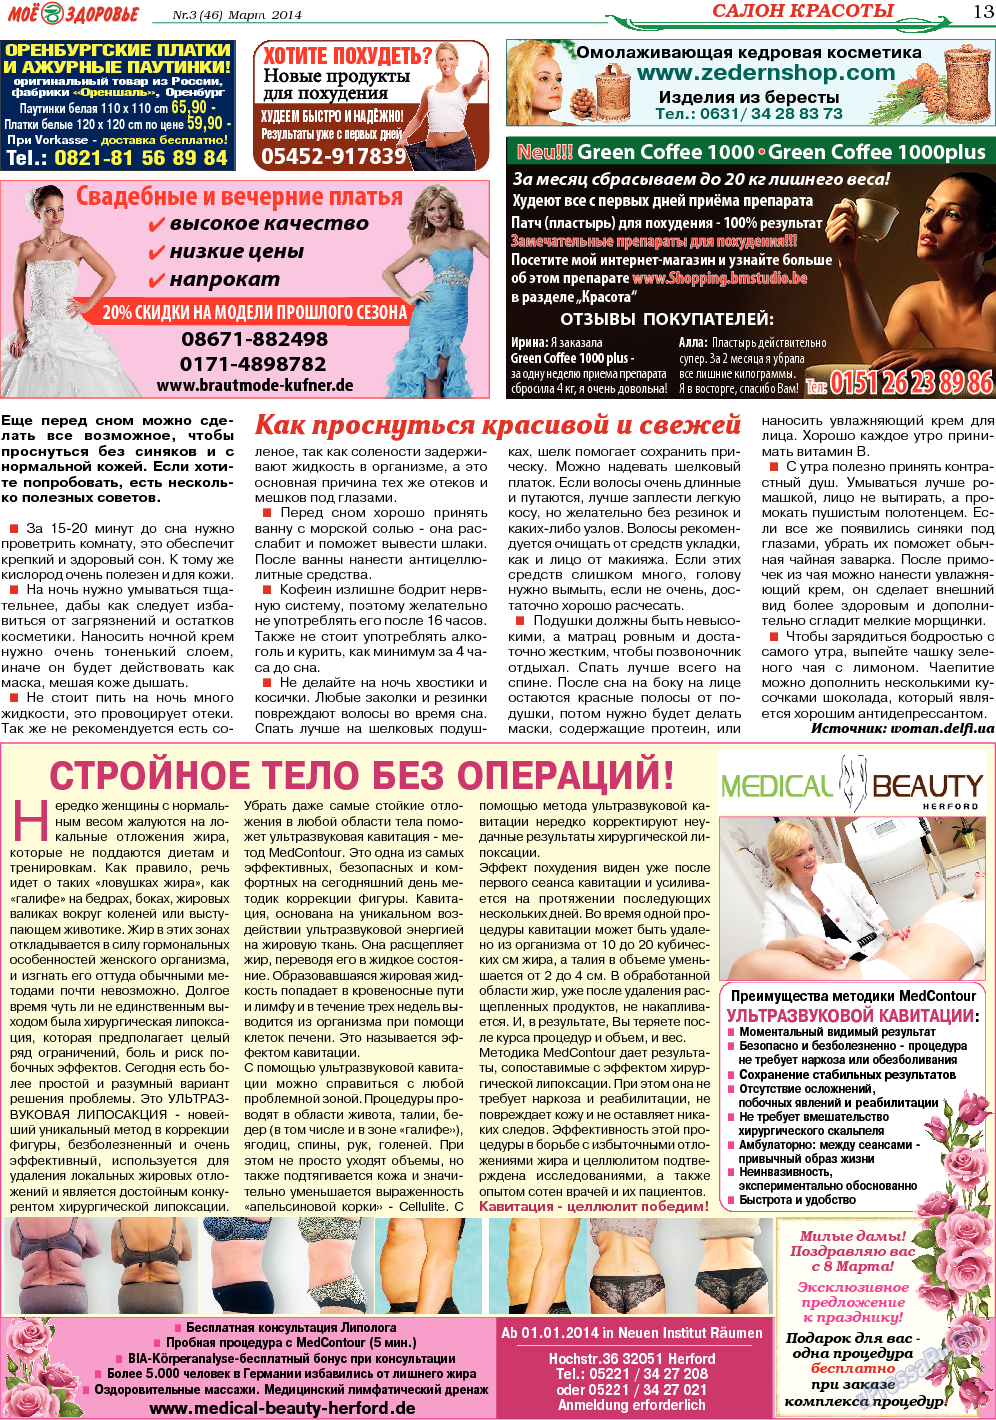 Кругозор, газета. 2014 №3 стр.13